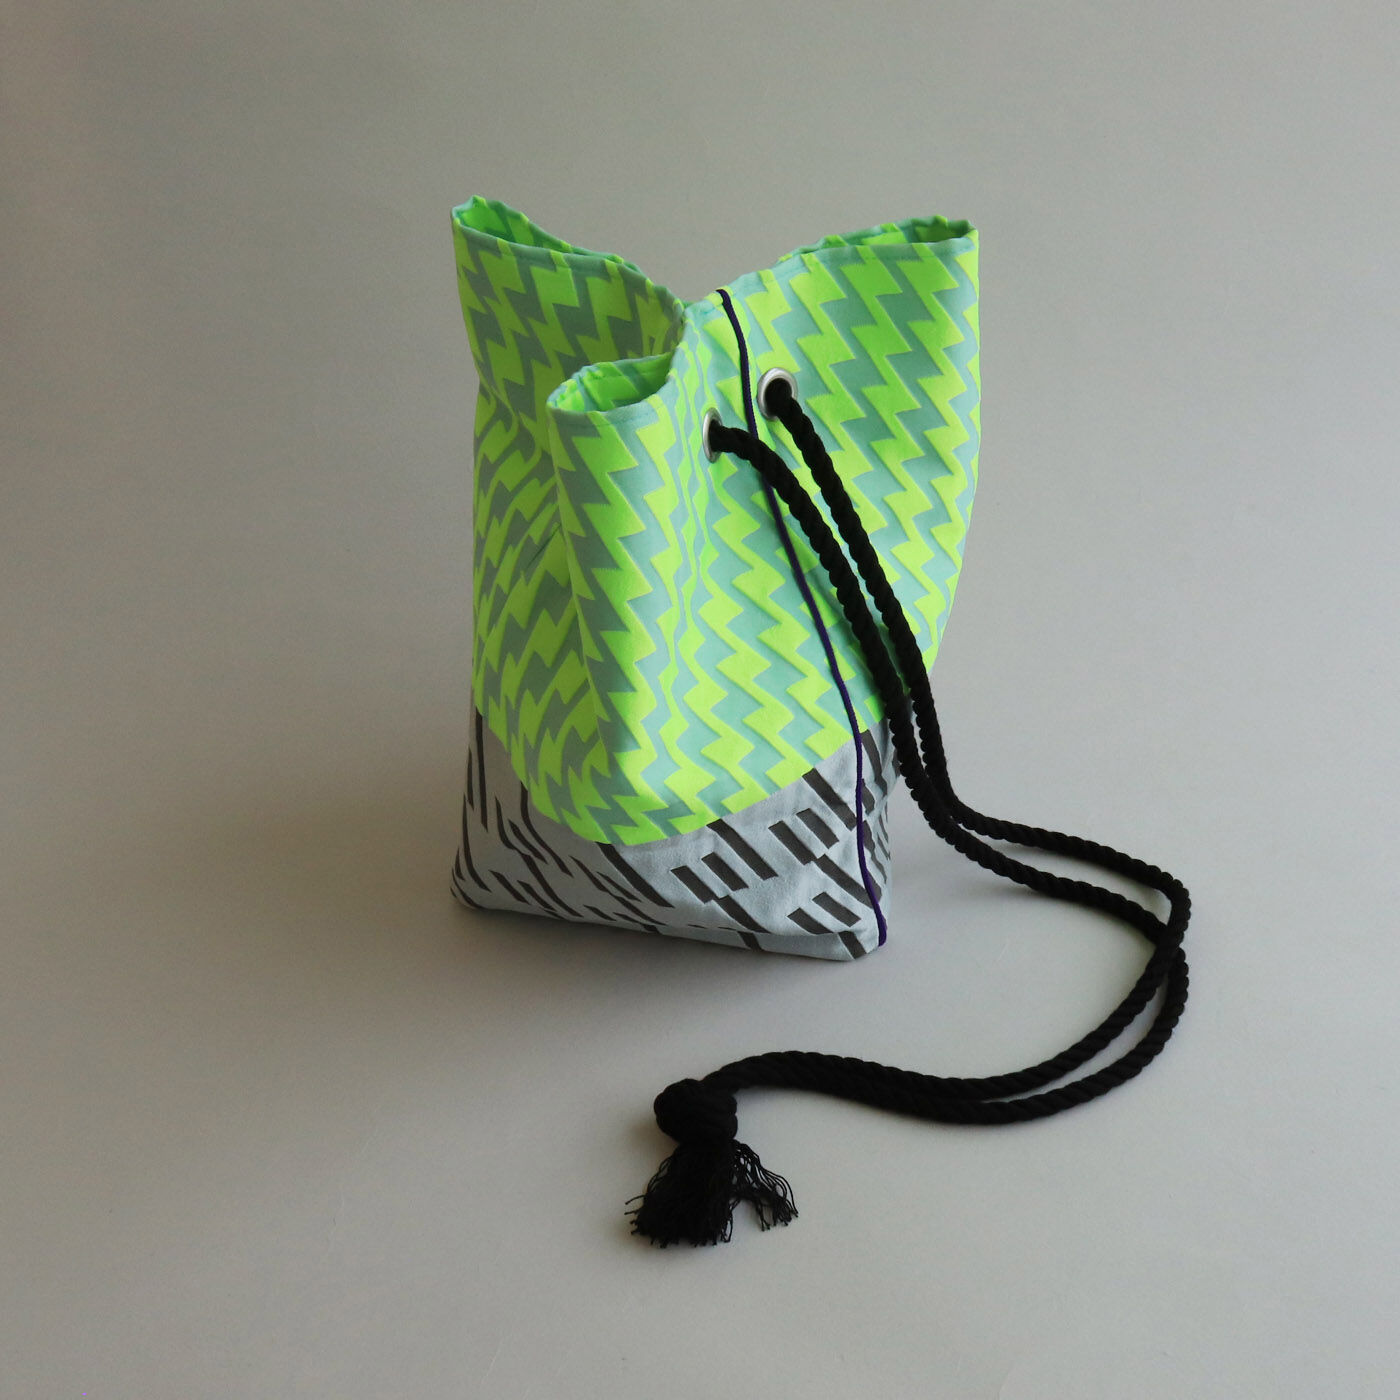 ＆Stories|テキスタイルデザイナーと作った 播州織のダズリングバッグ〈ナイトネオン〉|シャープなシルエットなので大人っぽく使える巾着バッグです。